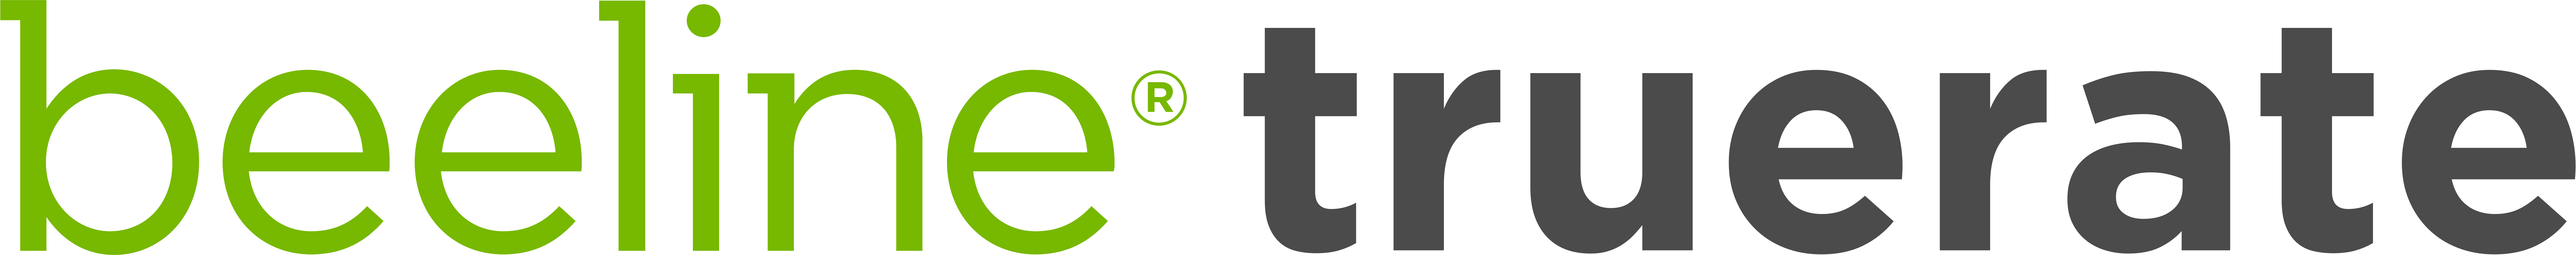 beeline true-rate logo